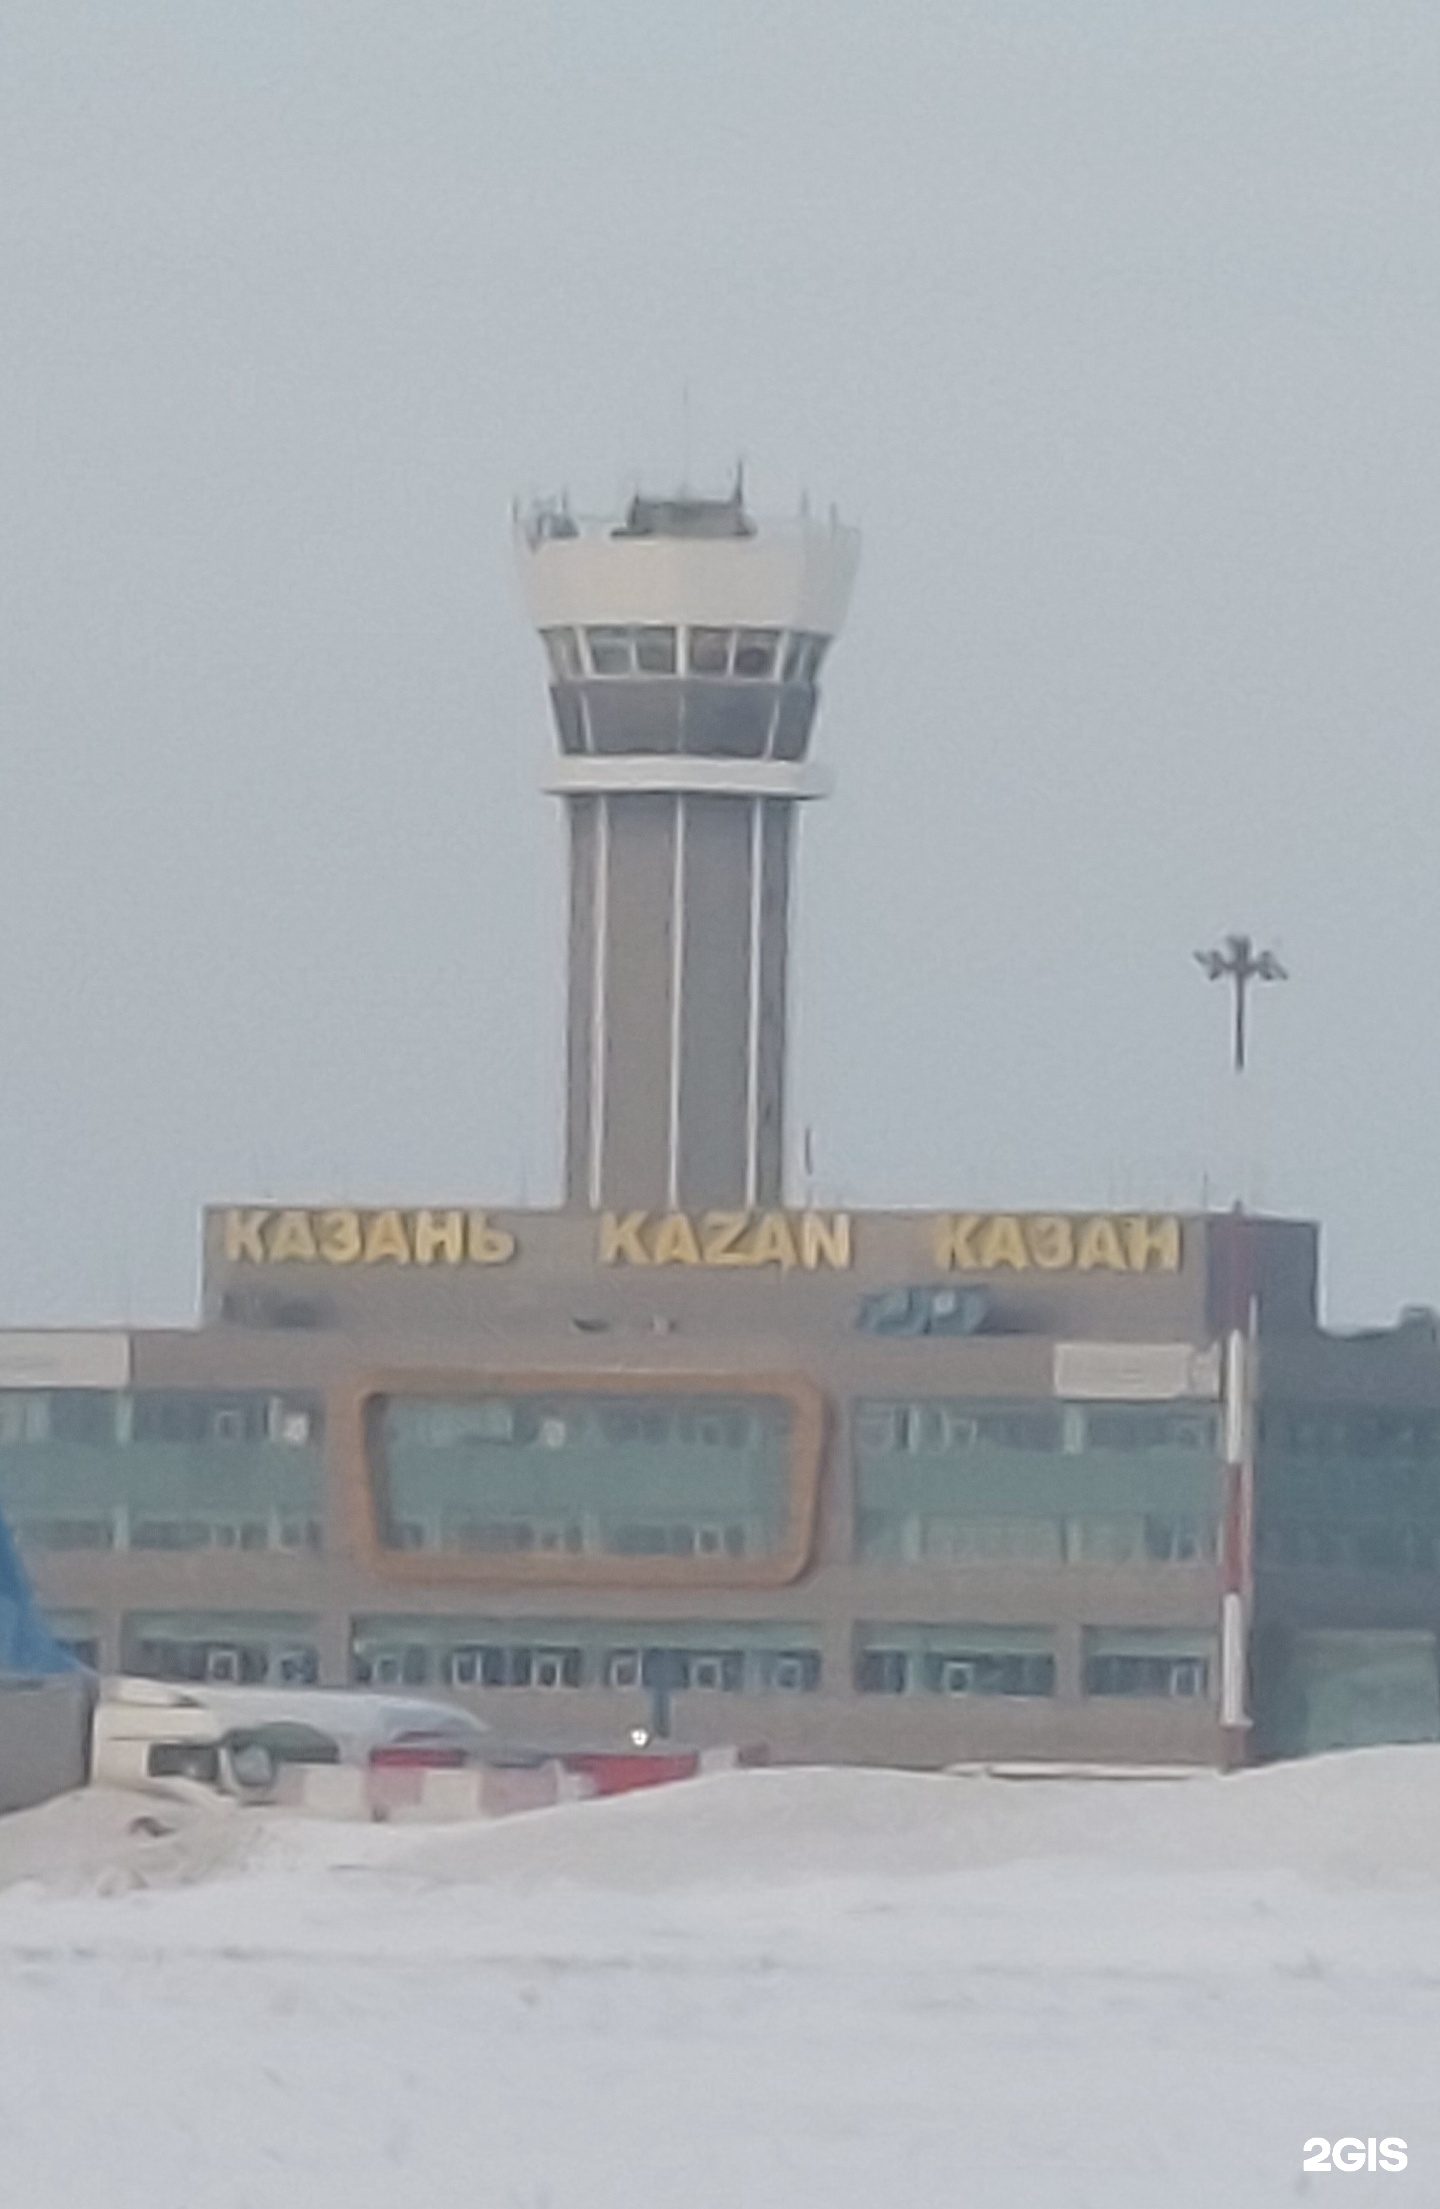 Аэропорт Казань, международный аэропорт, терминал А1, Аэропорт, терминал 1А, с. Столбище — 2ГИС